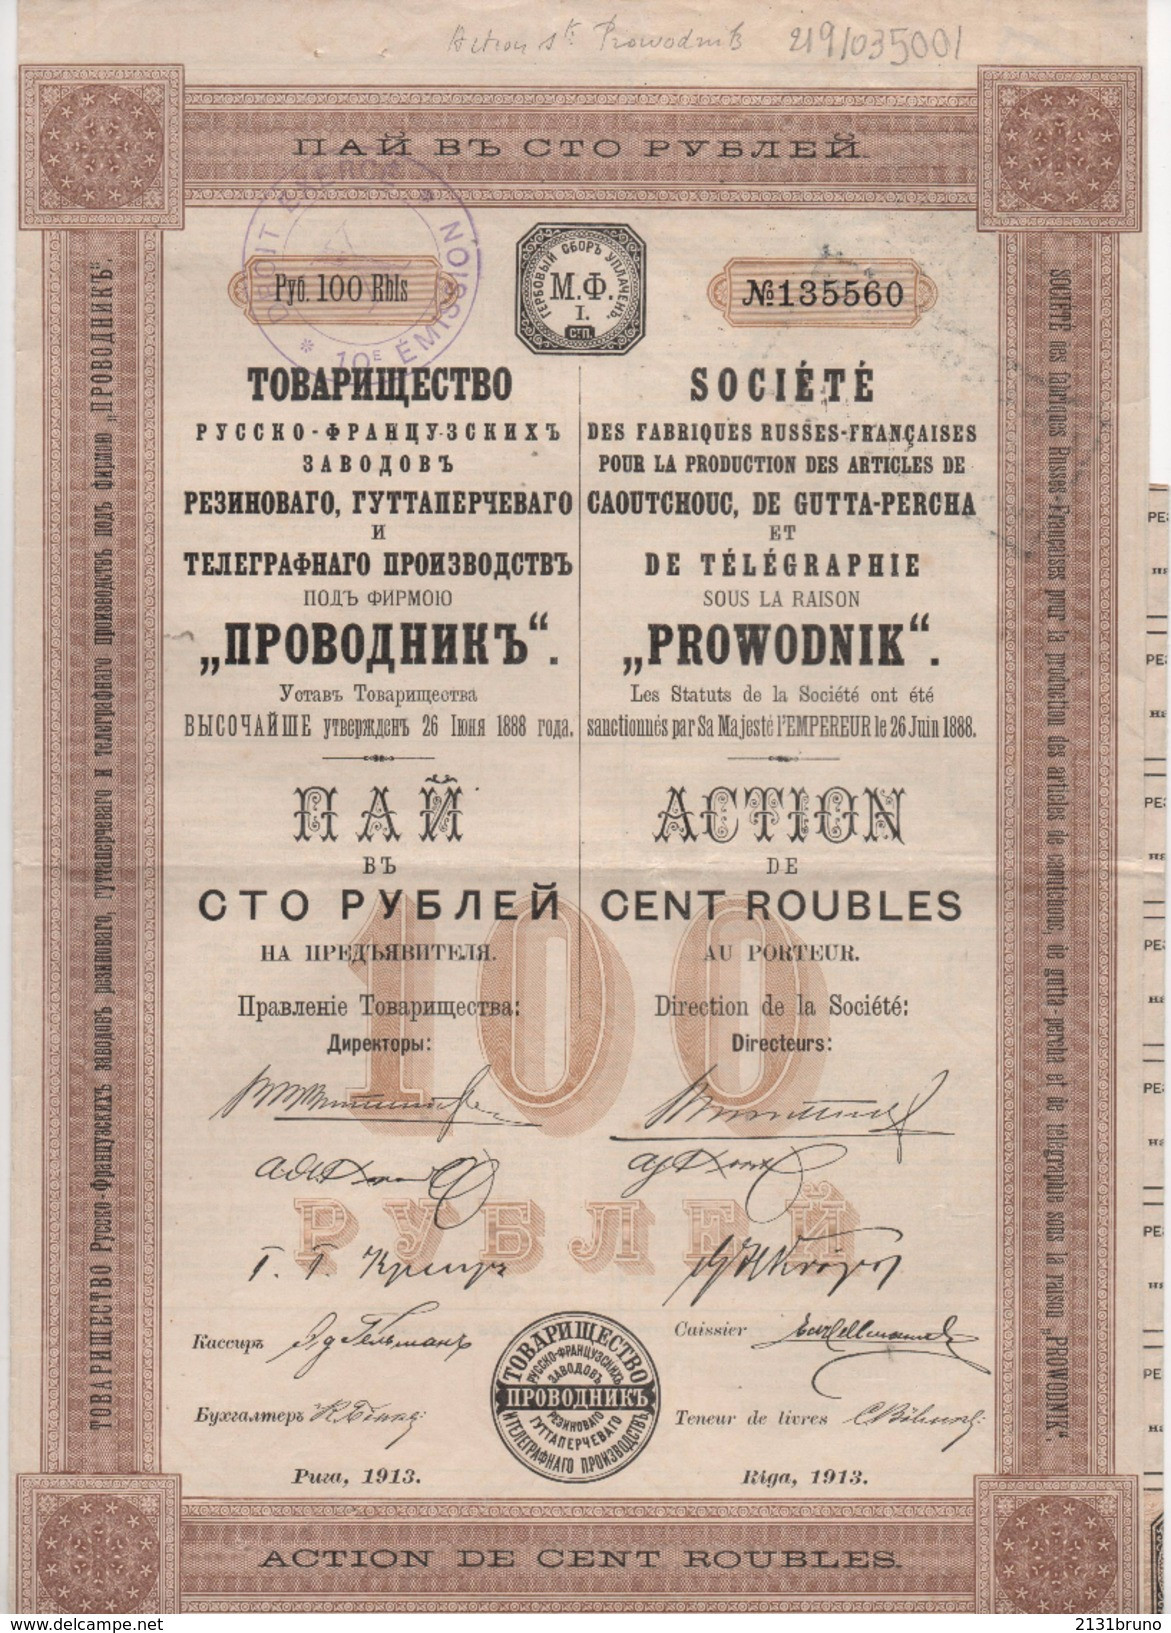 EMPRUNT RUSSE SOCIETE PROWODNIK ACTION DE 100 ROUBLES CAOUTHOUC GUTTA PERCHA TELEGRAPHIE 1913 - P - R